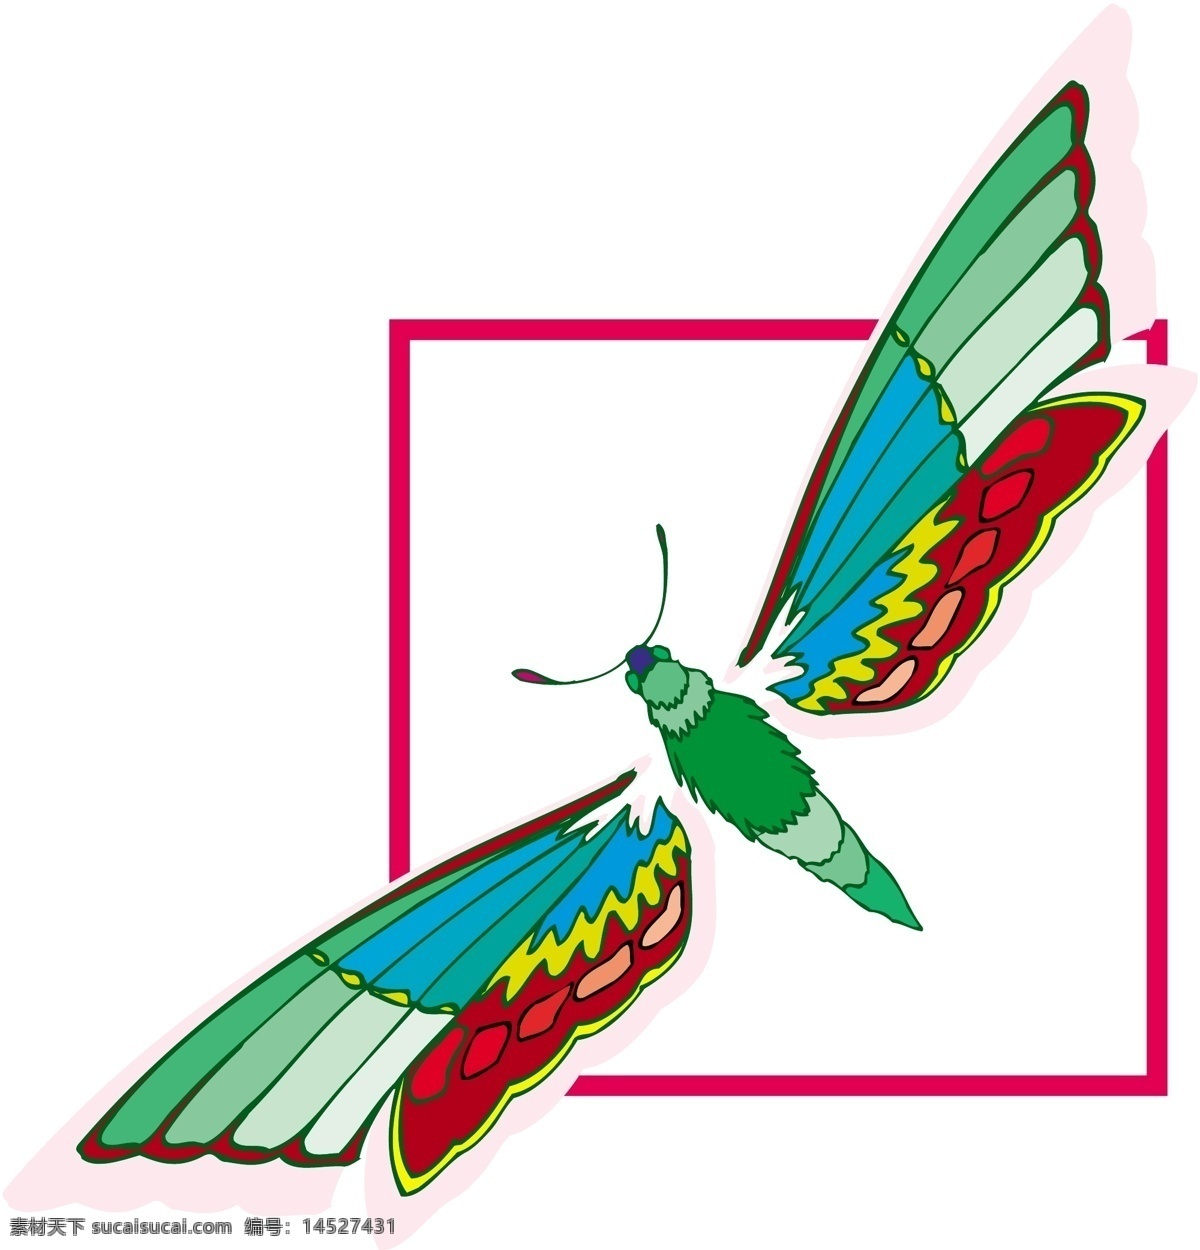 五彩蝴蝶 矢量素材 格式 eps格式 设计素材 昆虫世界 矢量动物 矢量图库 白色